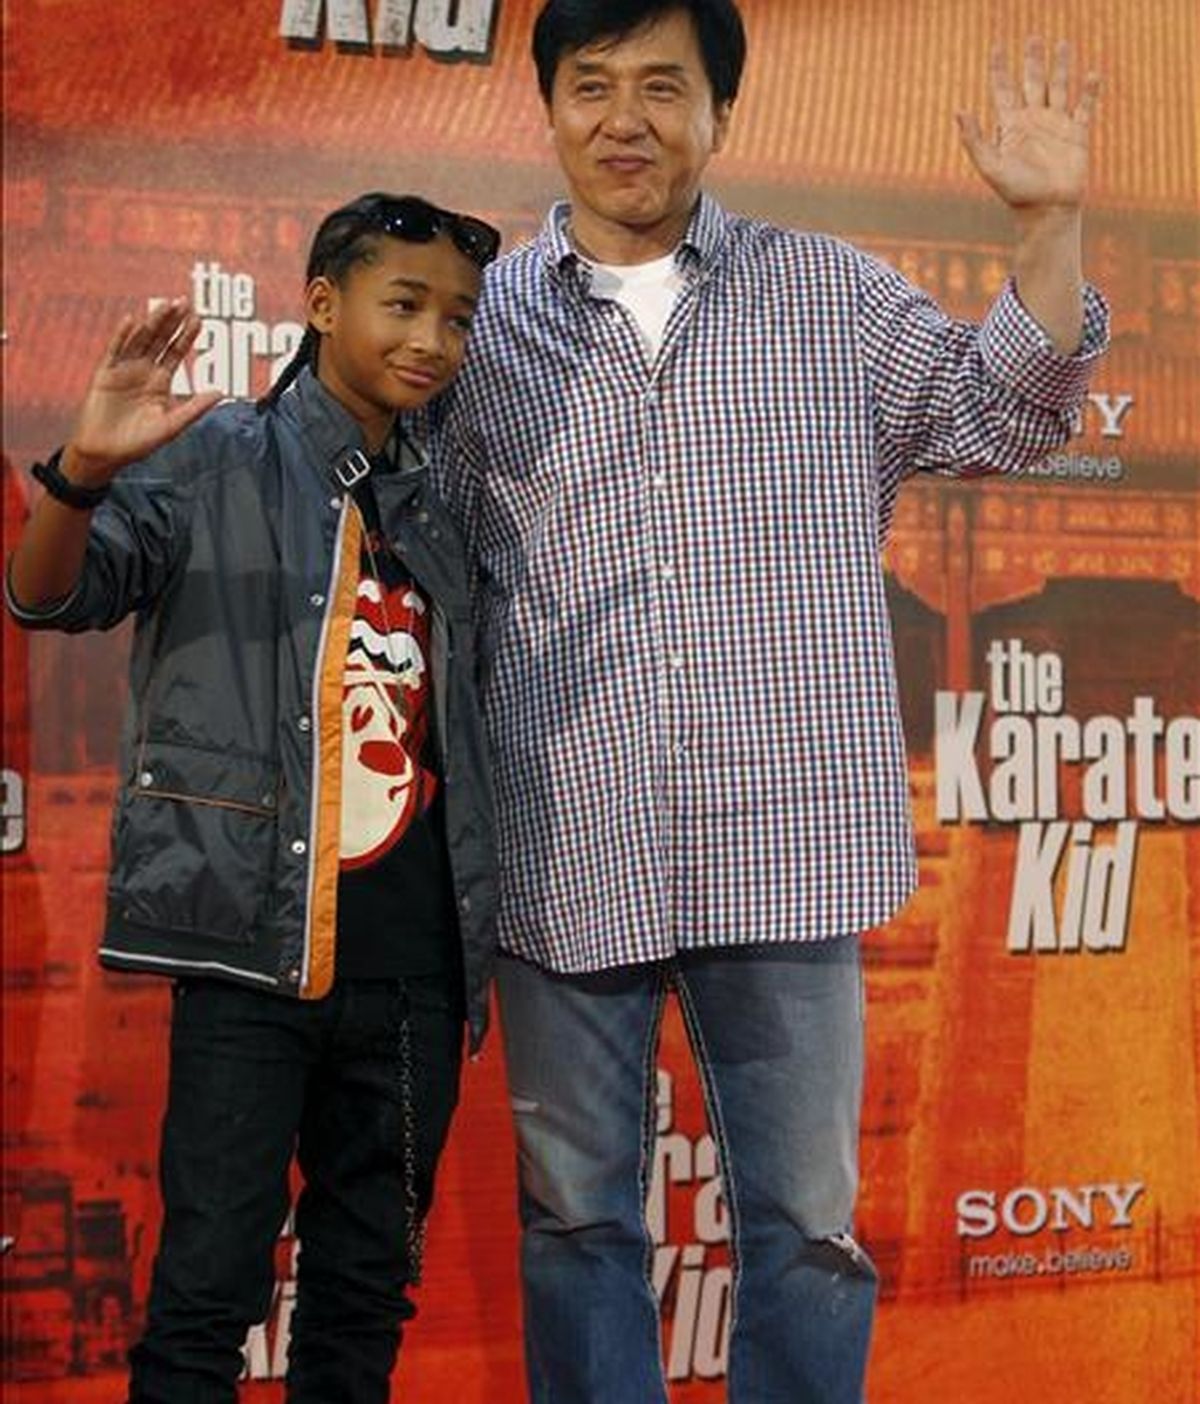 El actor Jackie Chan (d), durante la presentación en Madrid de la película "Karate Kid", uno de los clásicos del cine adolescente de los años ochenta, que vuelve al cine con una versión, protagonizada por Jaden Smith (junto a él), el hijo de Will Smith, que es junto a su esposa uno de los productores de la cinta. EFE